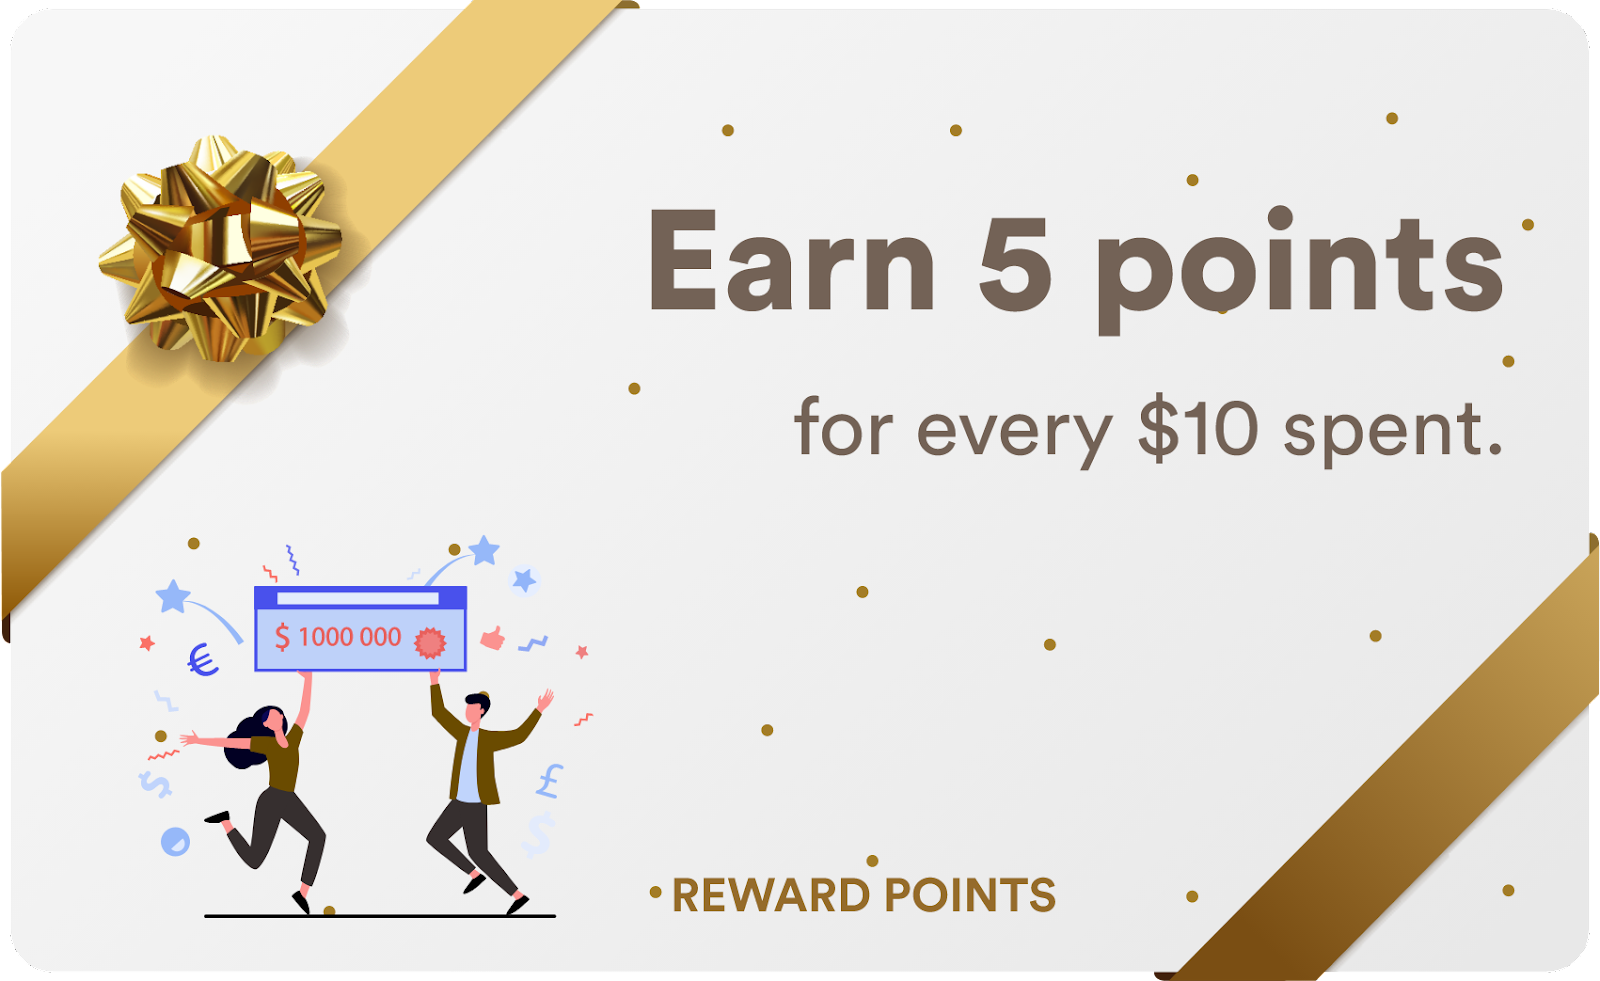 Reward points